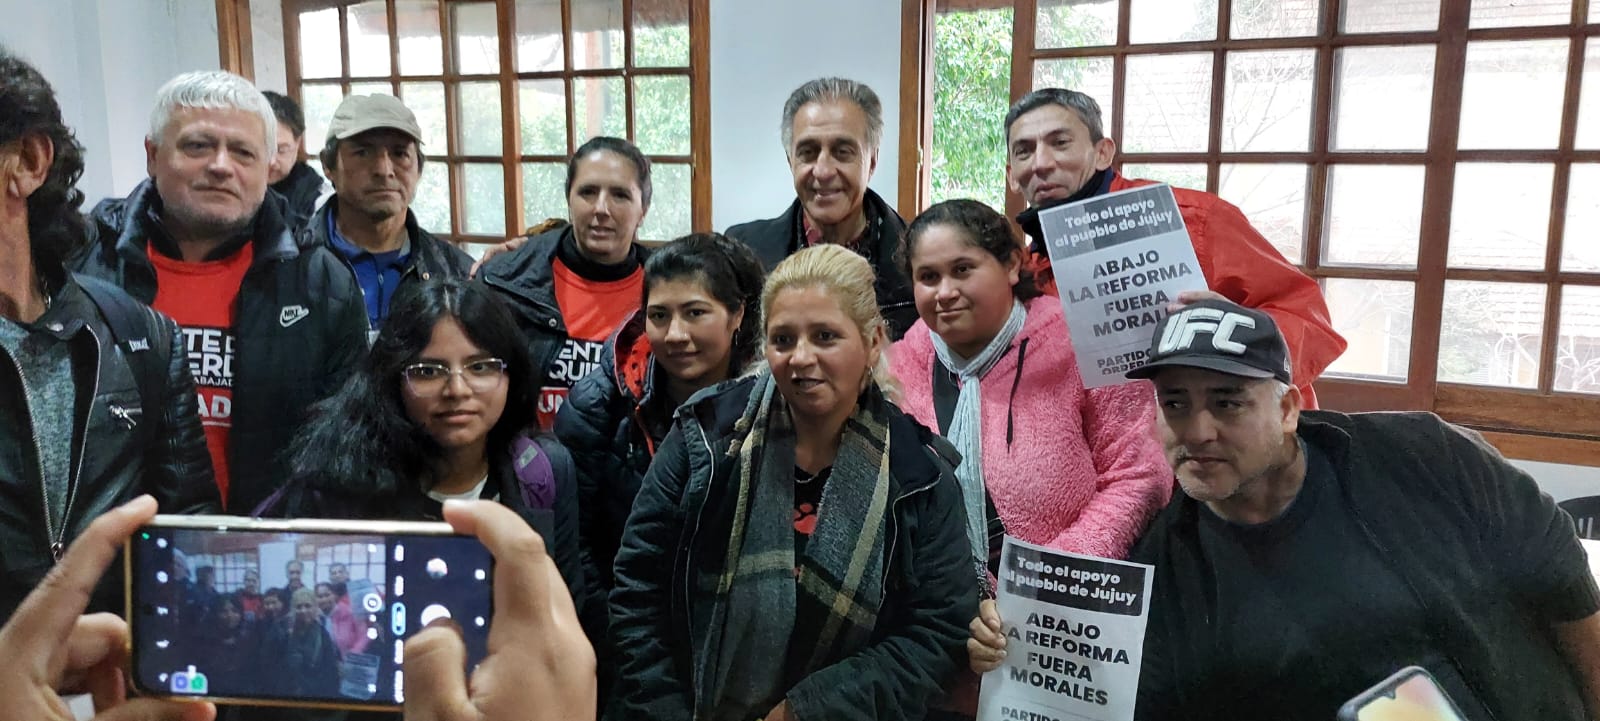 Néstor Pitrola: “El paro nacional docente expresa mucho más que la solidaridad con Jujuy”